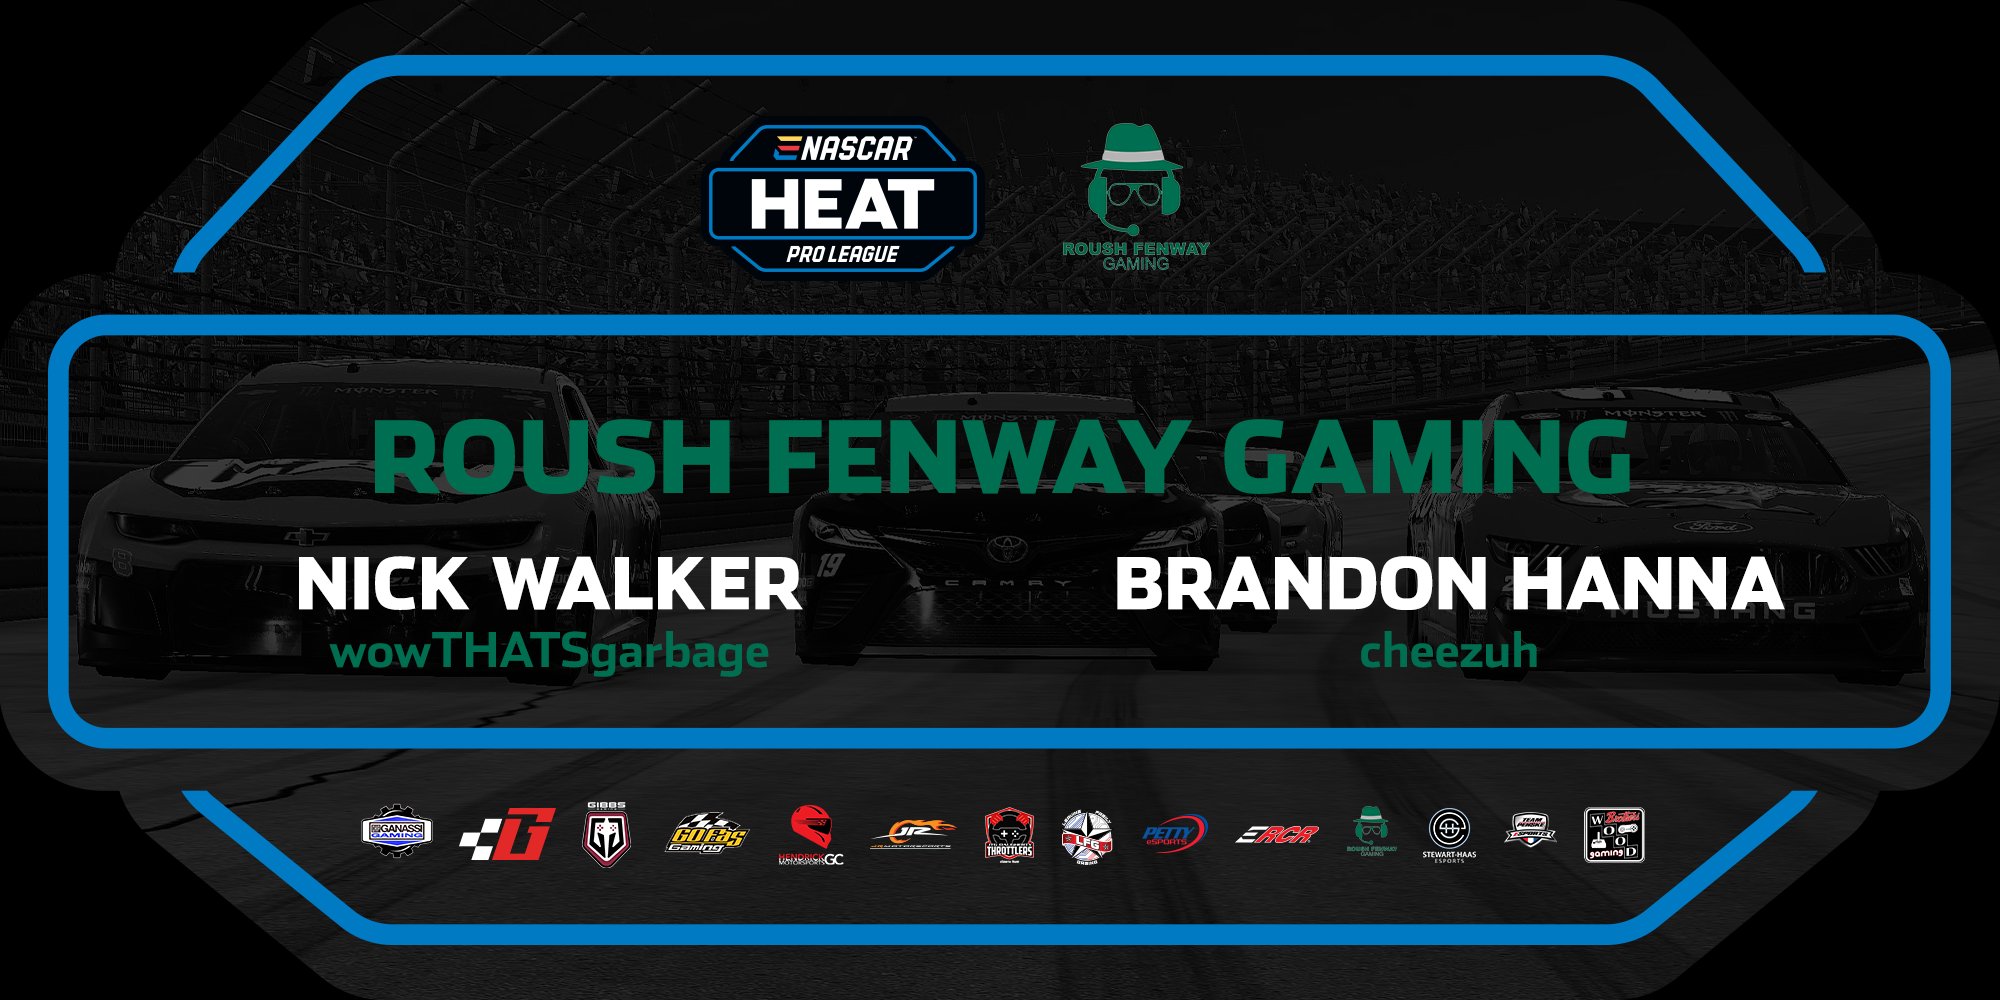 Roush Fenway eNASCAR Heat Pro League Preview